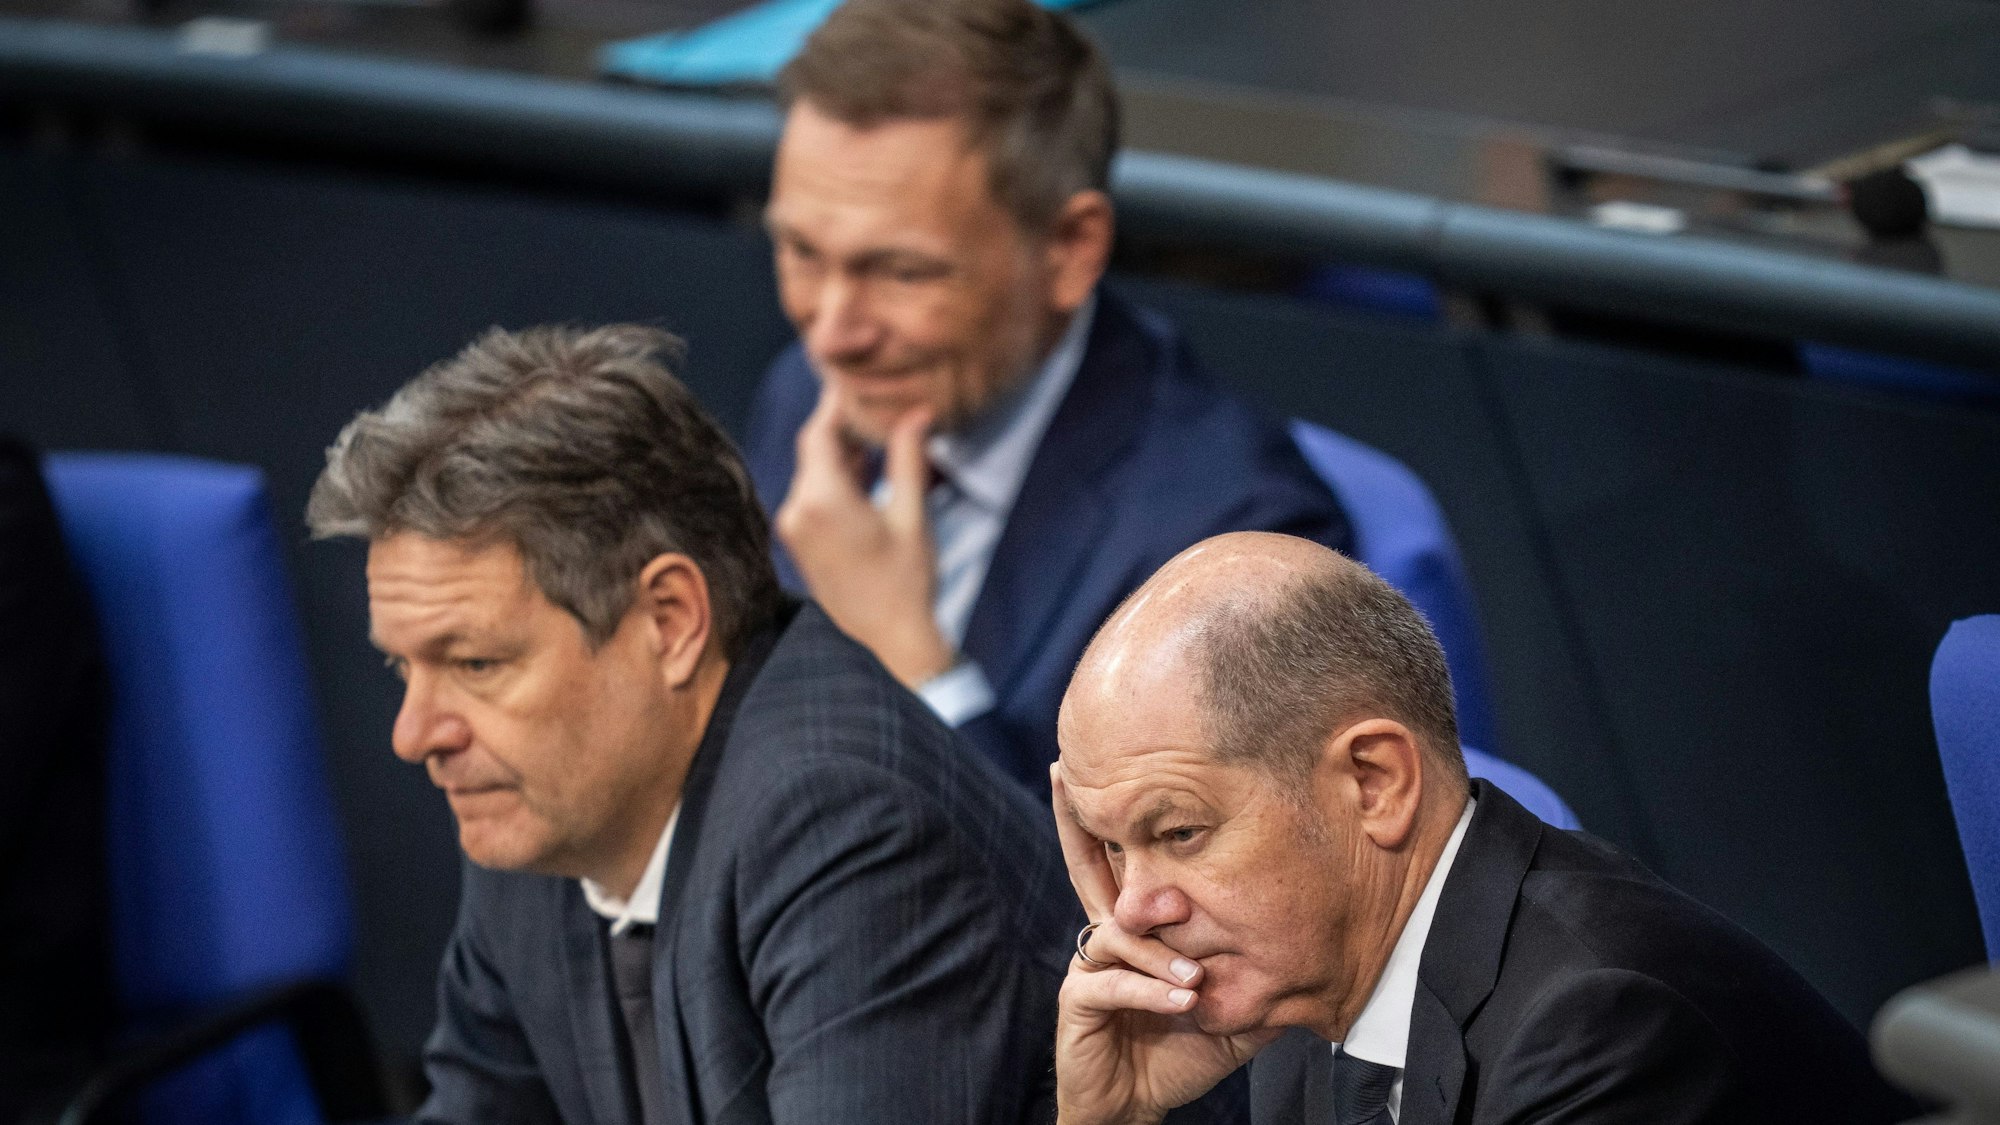 Bundeskanzler Olaf Scholz (SPD), Robert Habeck (Bündnis 90/Die Grünen), Bundesminister für Wirtschaft und Klimaschutz, und Christian Lindner (FDP), Bundesminister der Finanzen, verfolgen die Debatte zum Auftakt der Haushaltswoche.